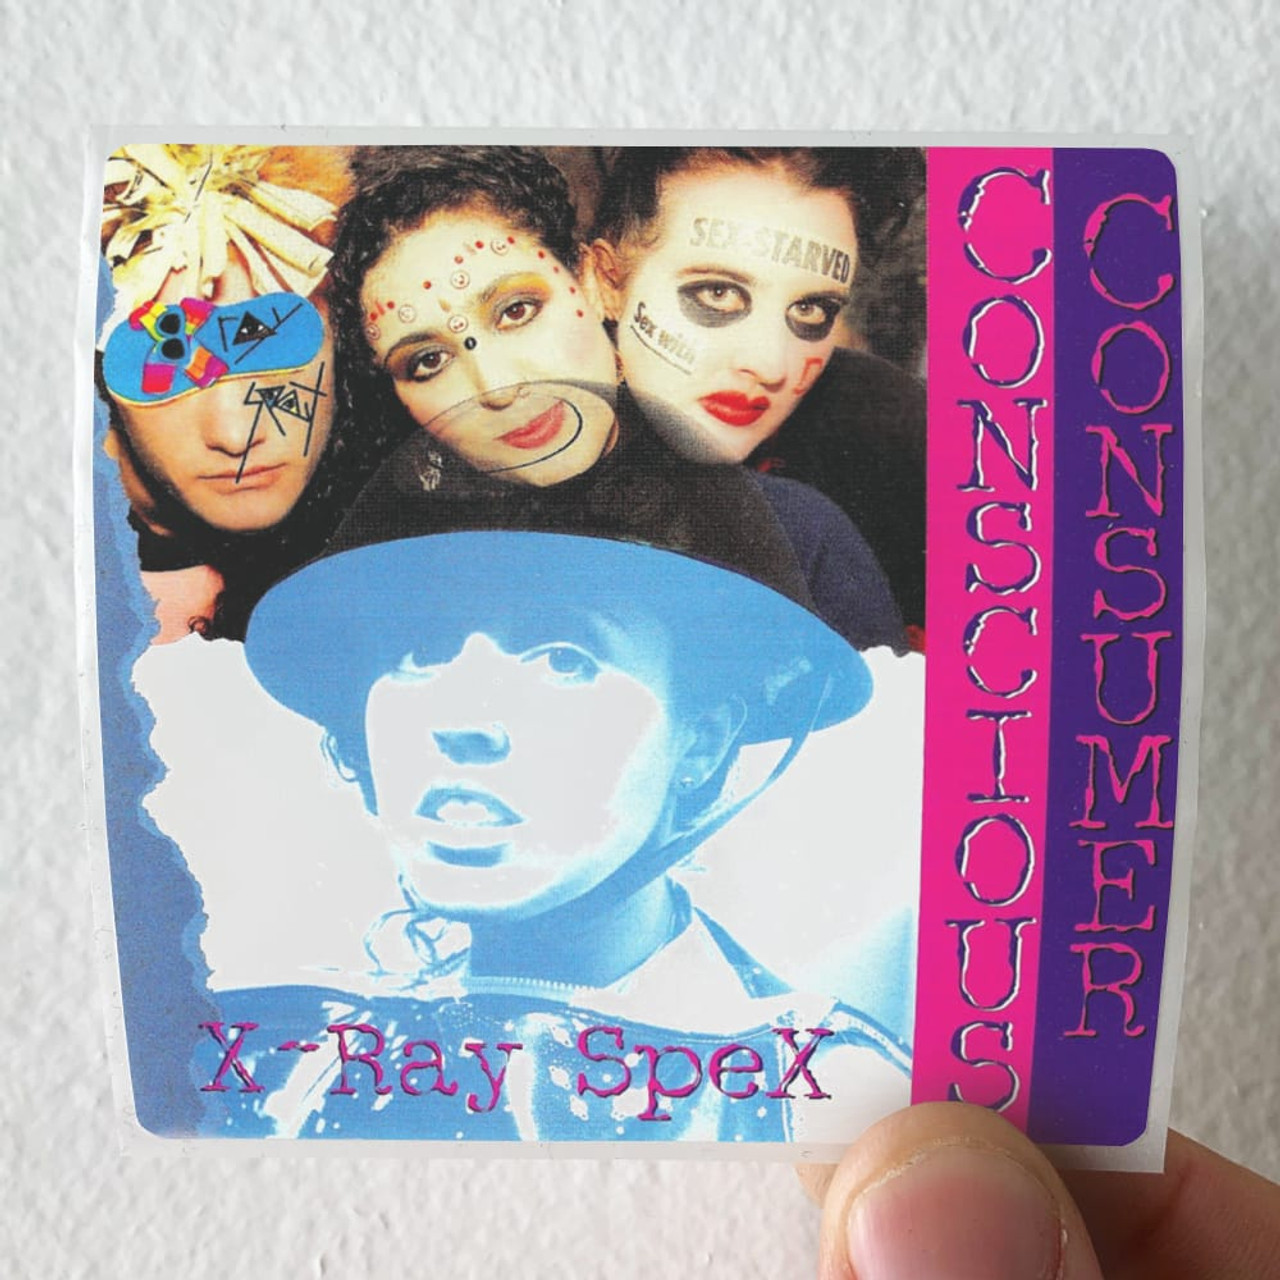 X Ray Spex Conscious Consumer Album Cover Sticker